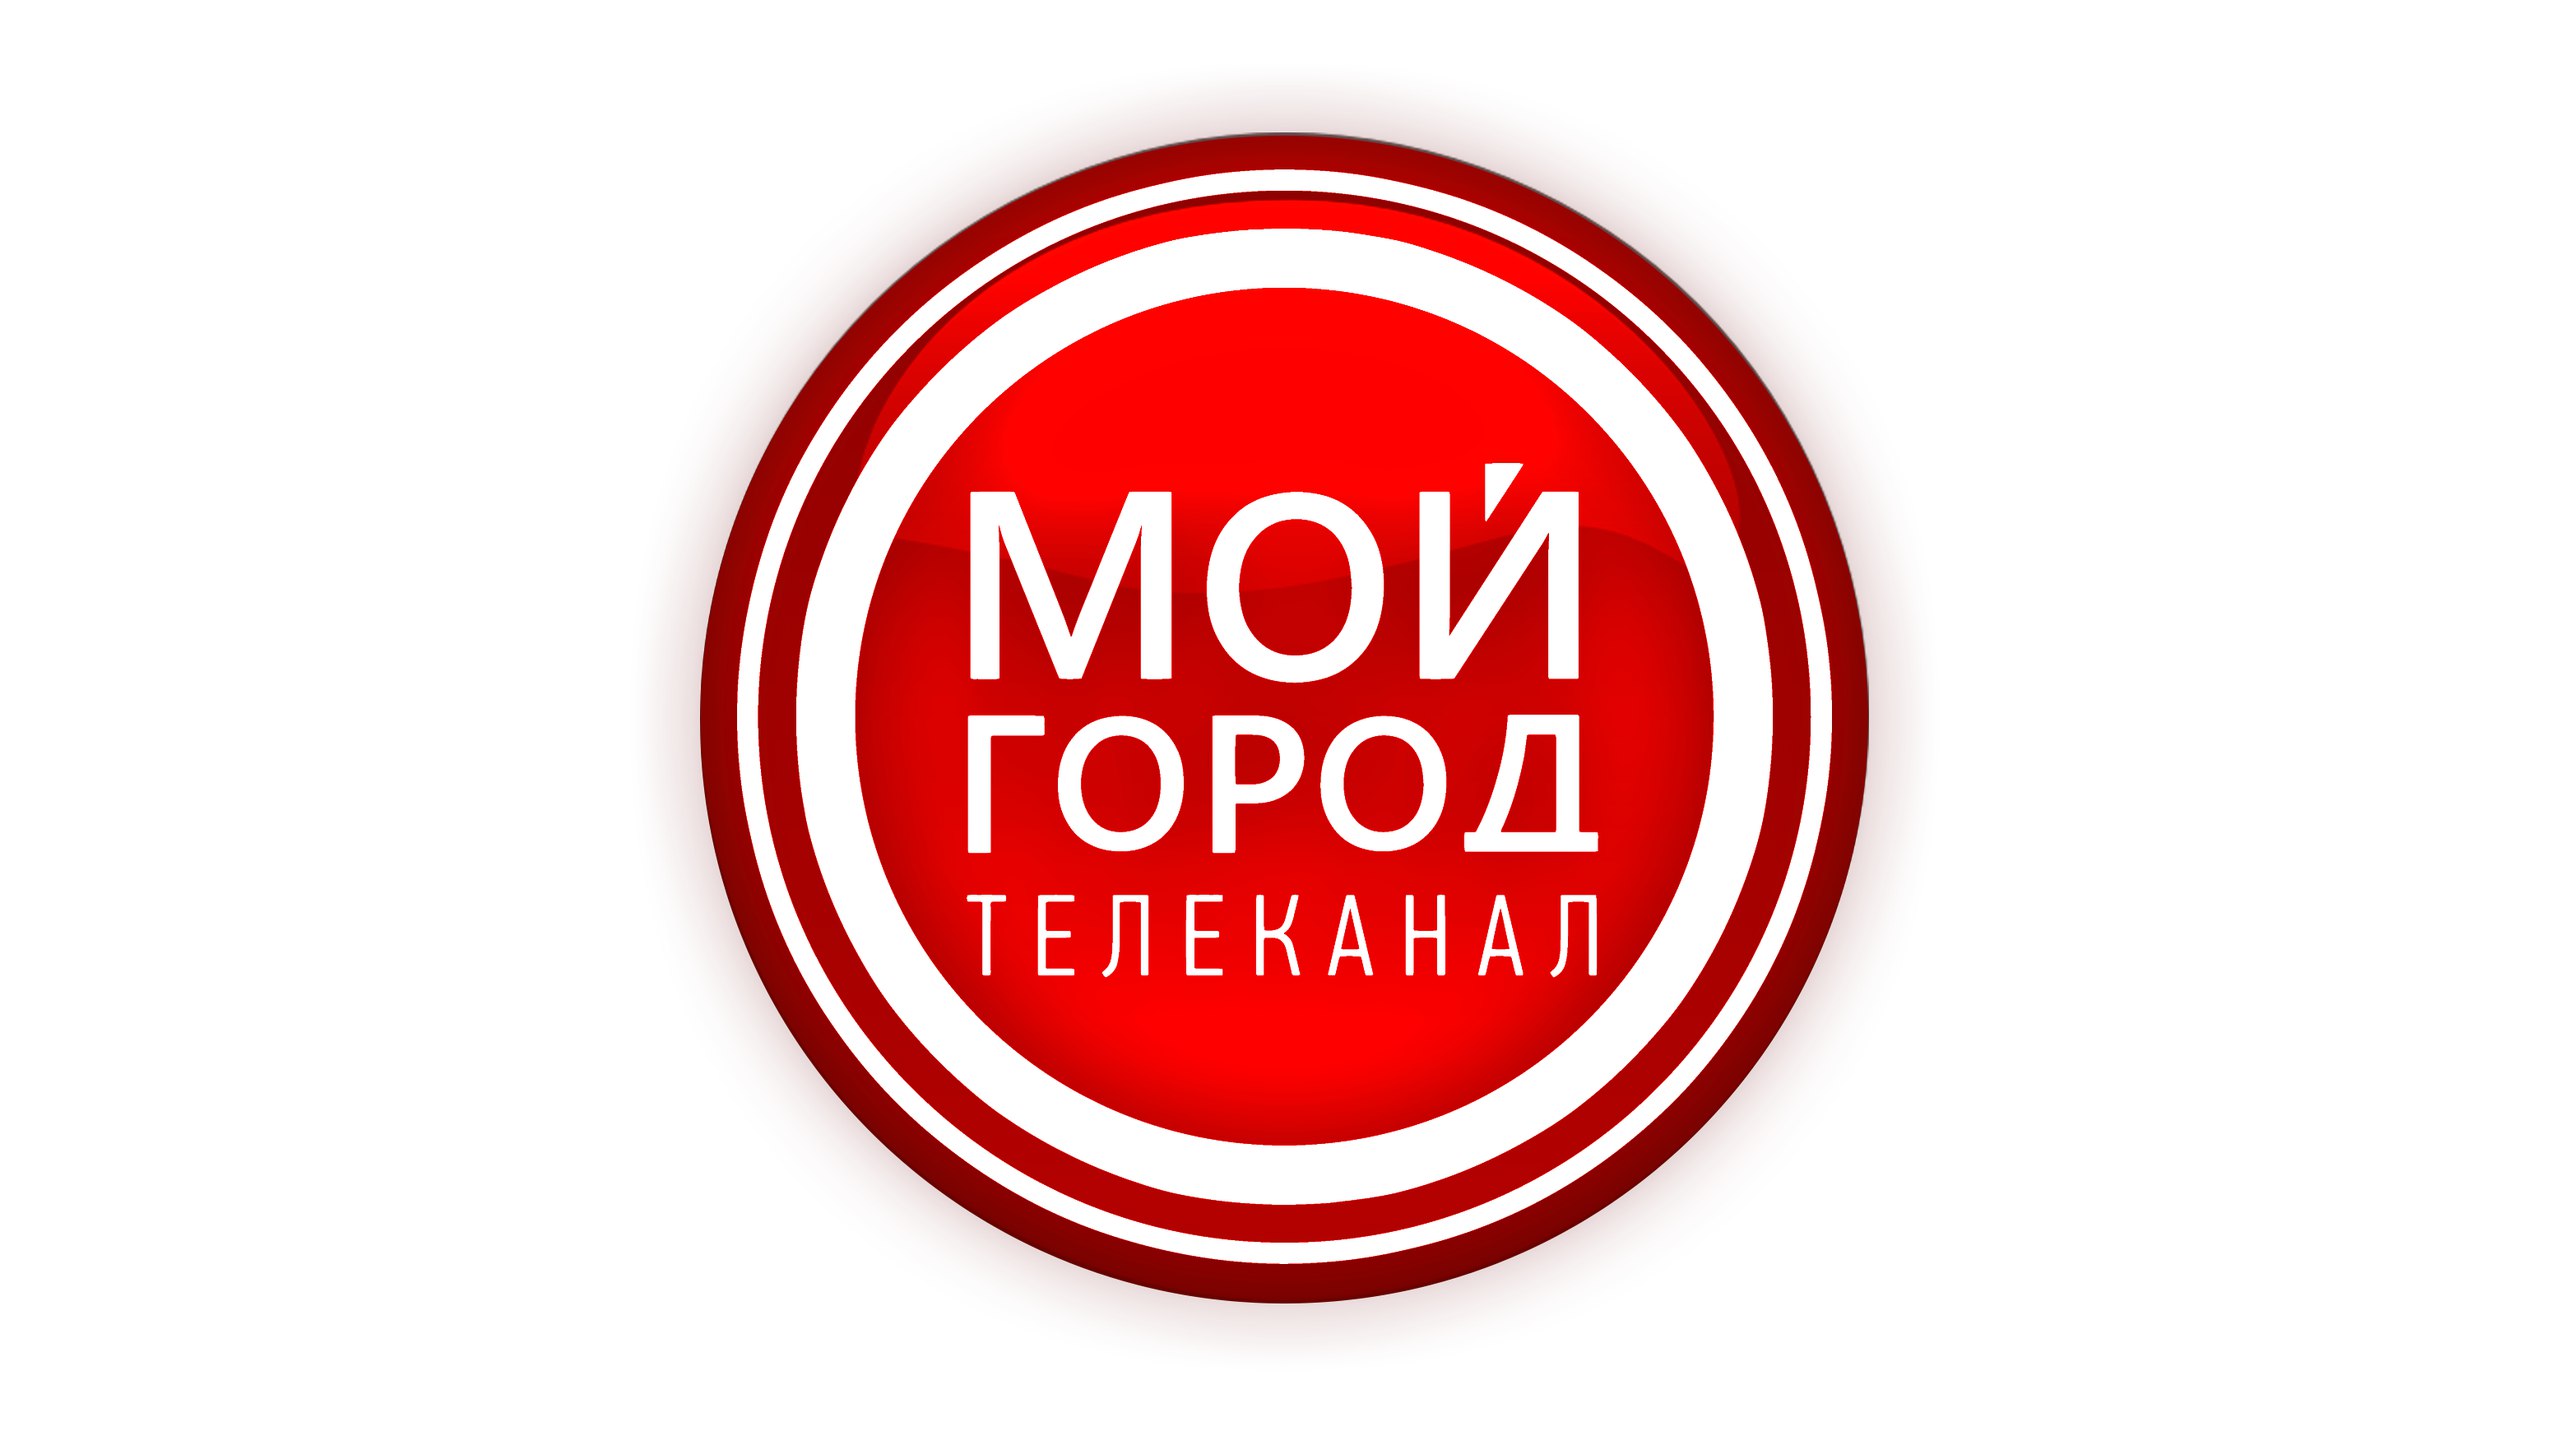 Раземщение рекламы «Мой город»,телеканал, г. Кемерово